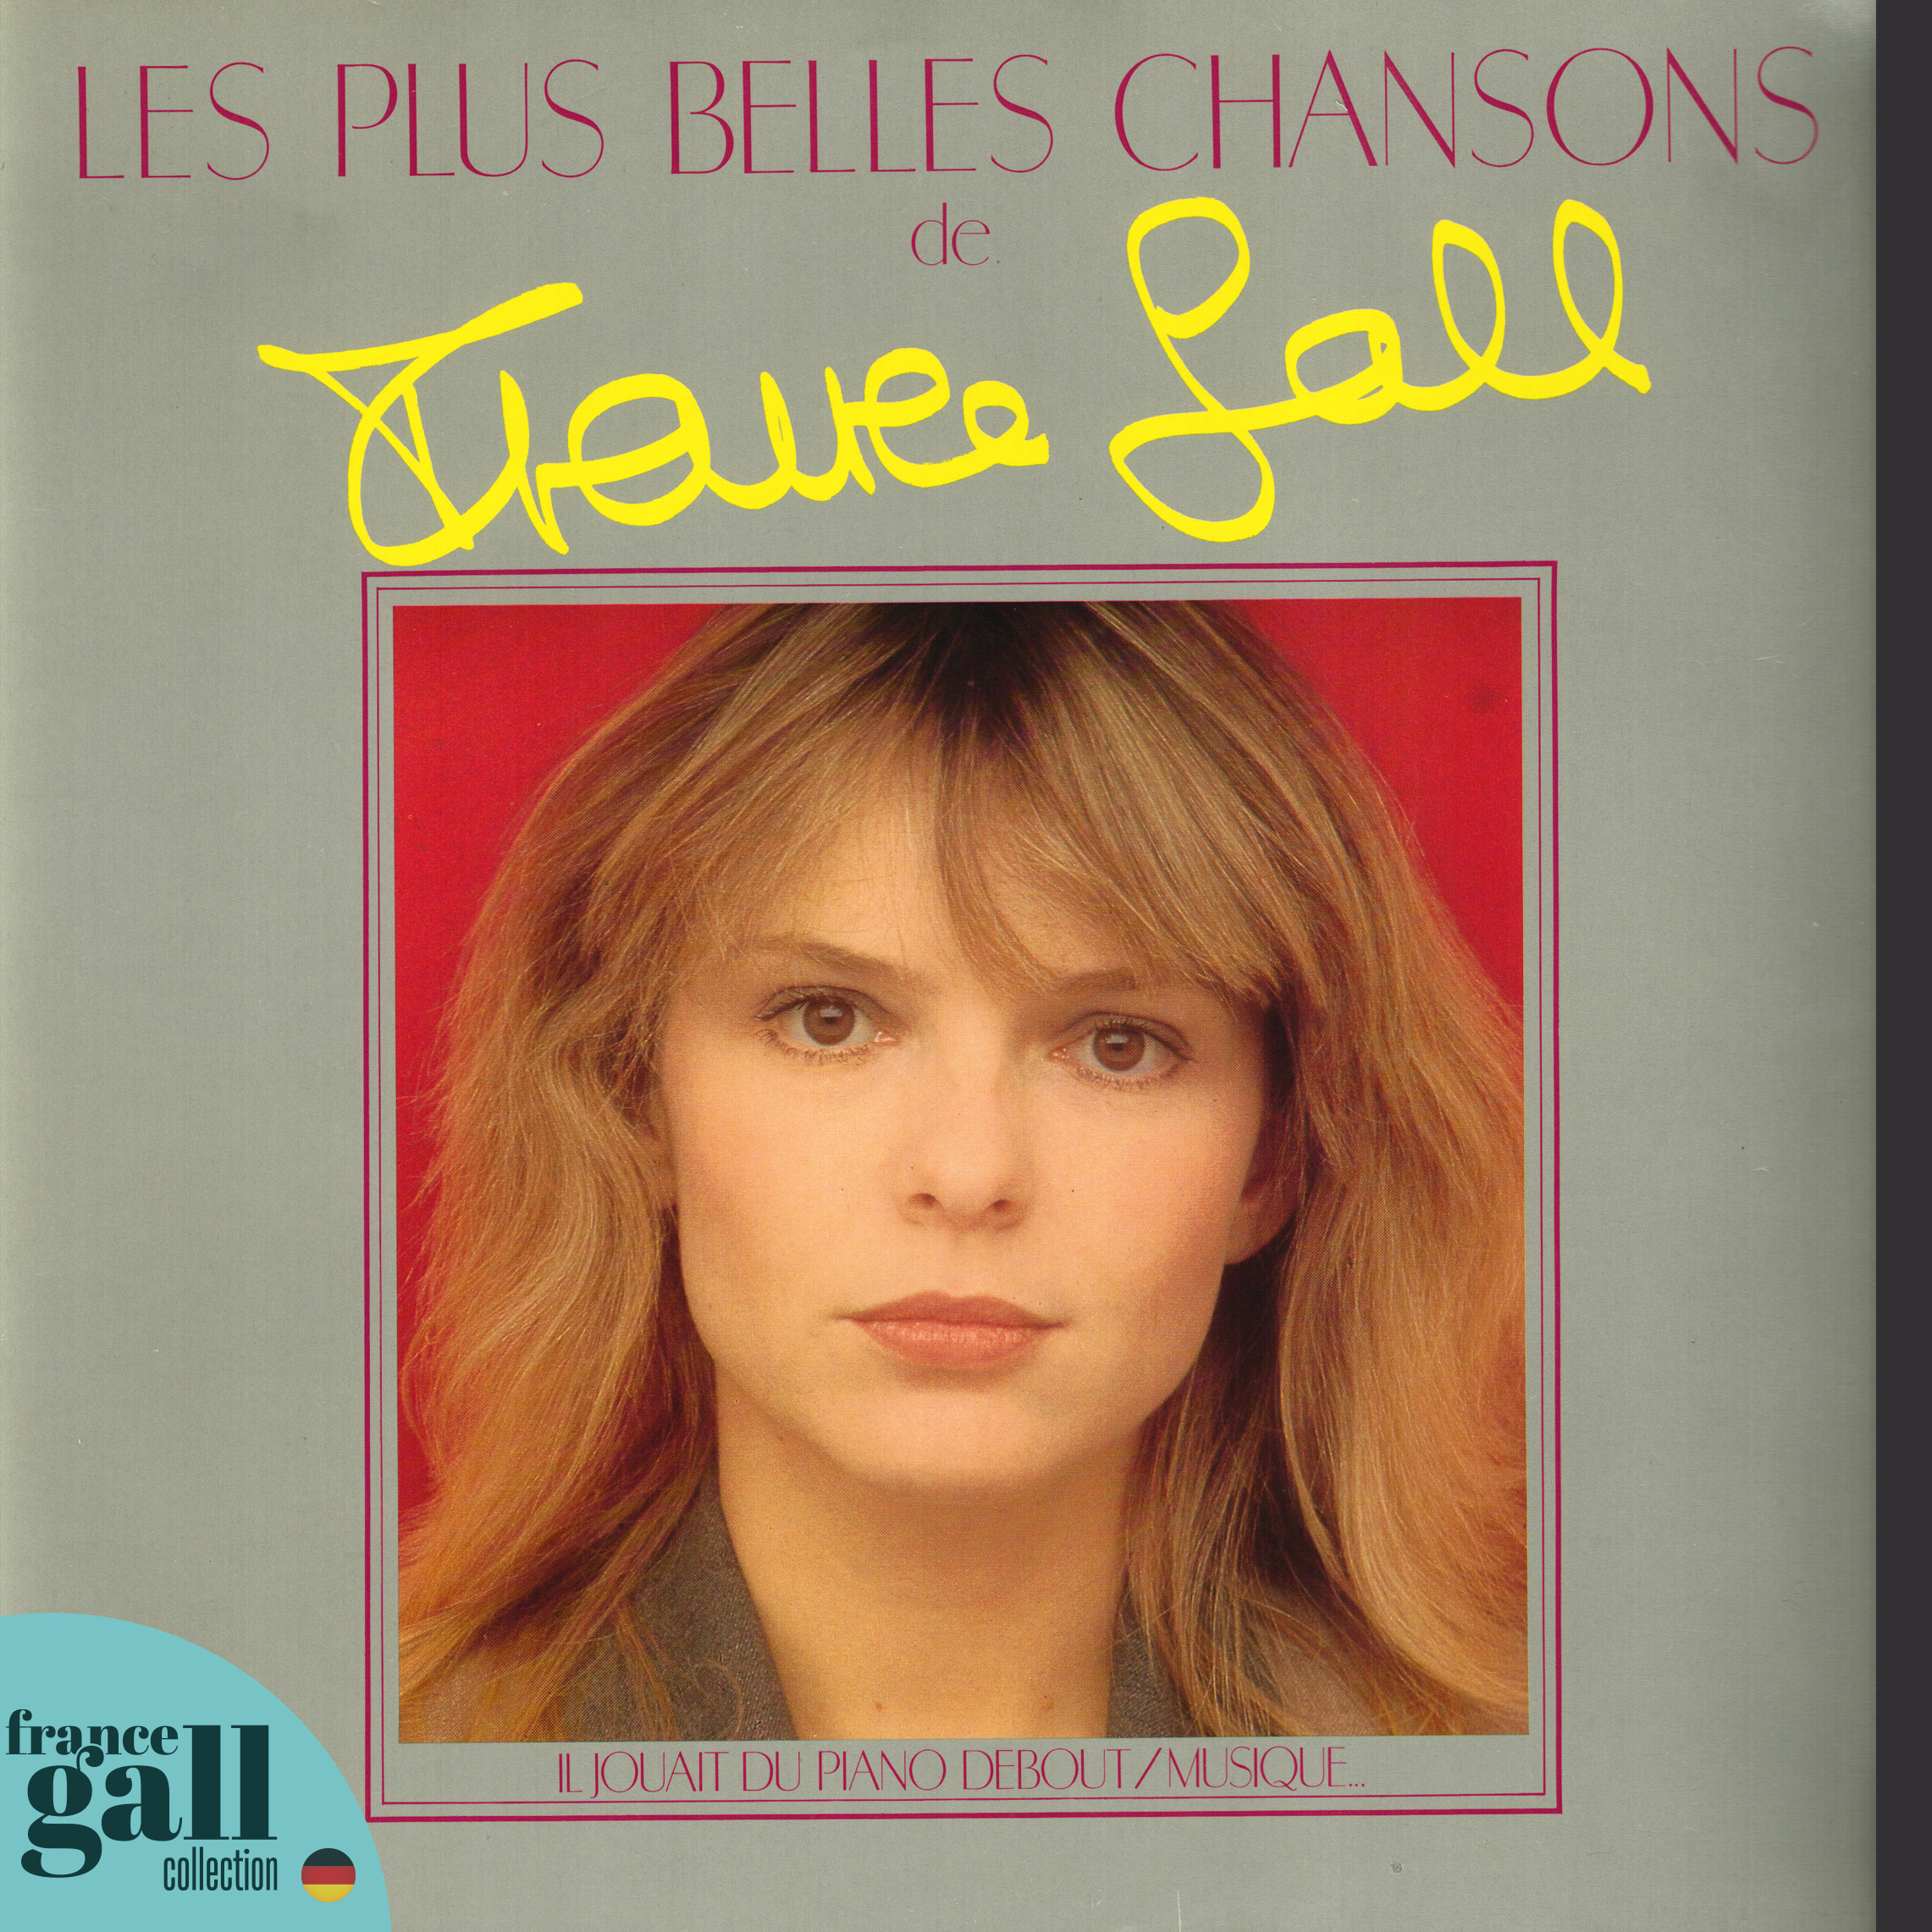 Belles Chansons de France